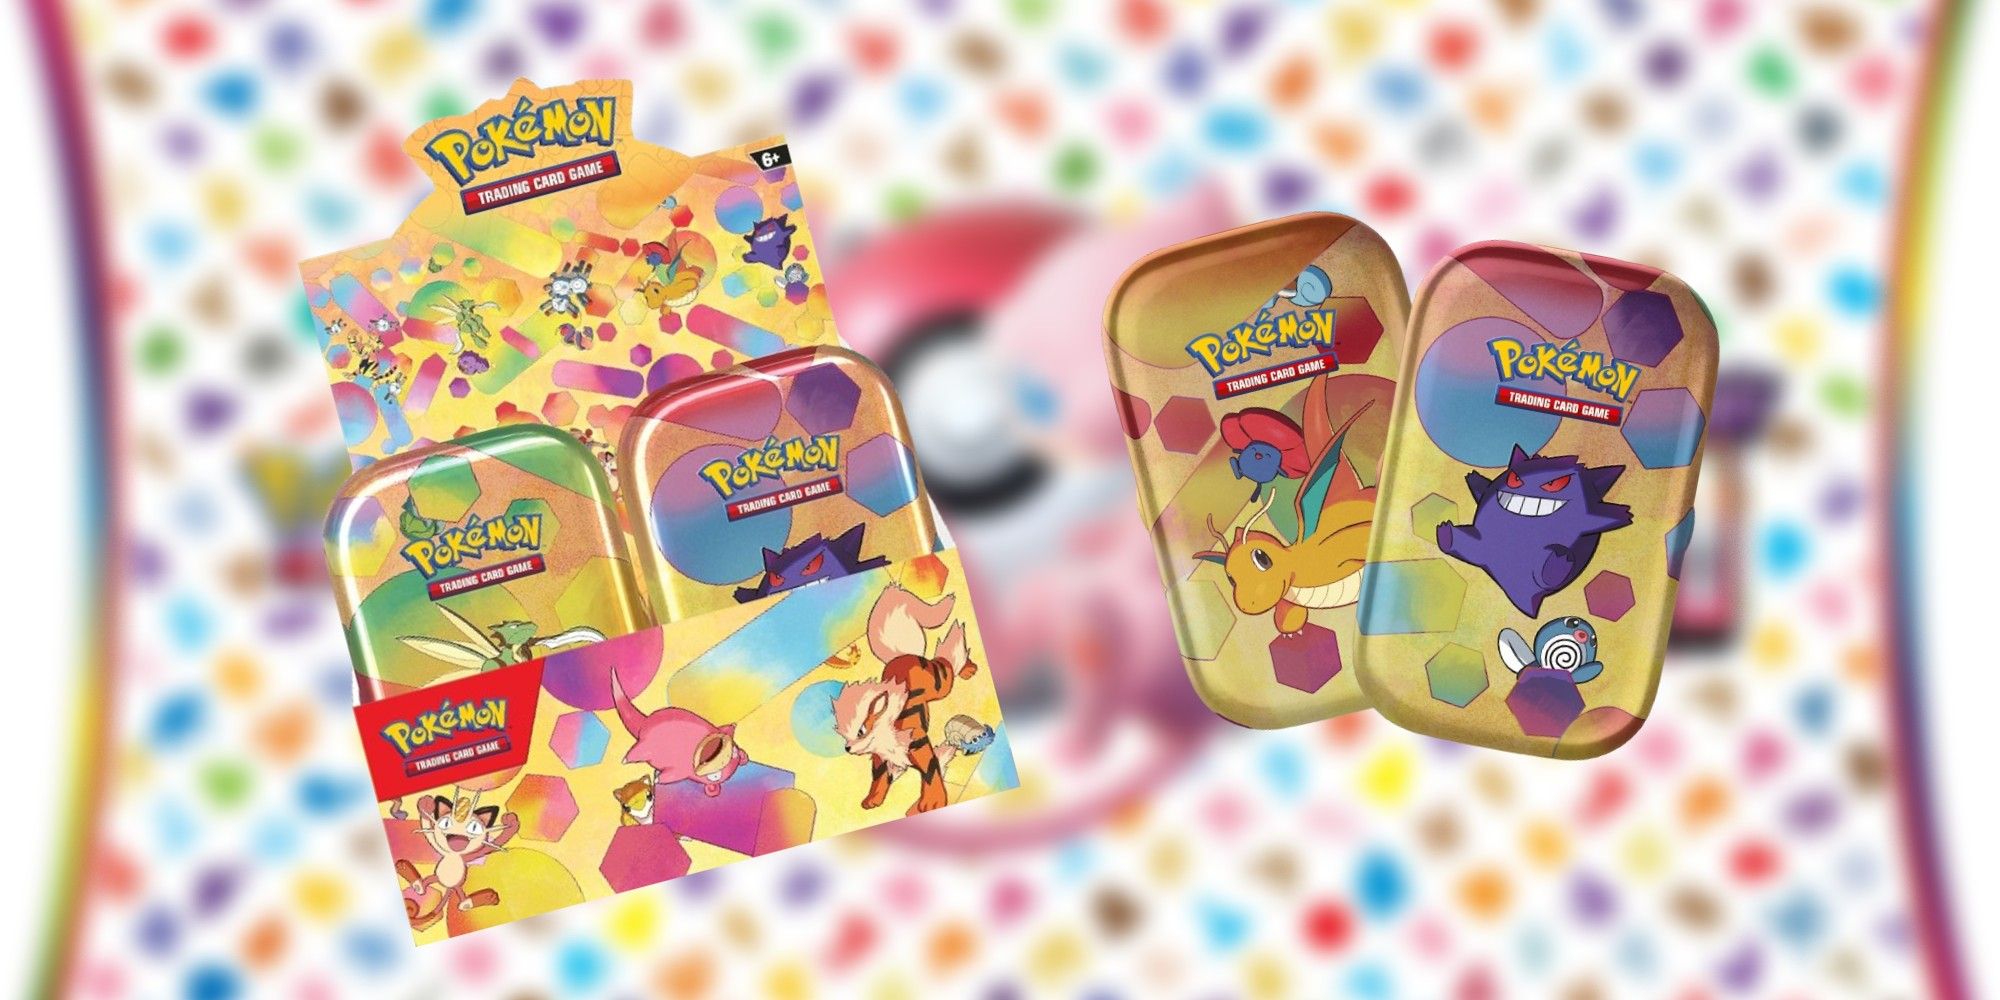 Pokémon Scharlach und Violett 151 Minidosen